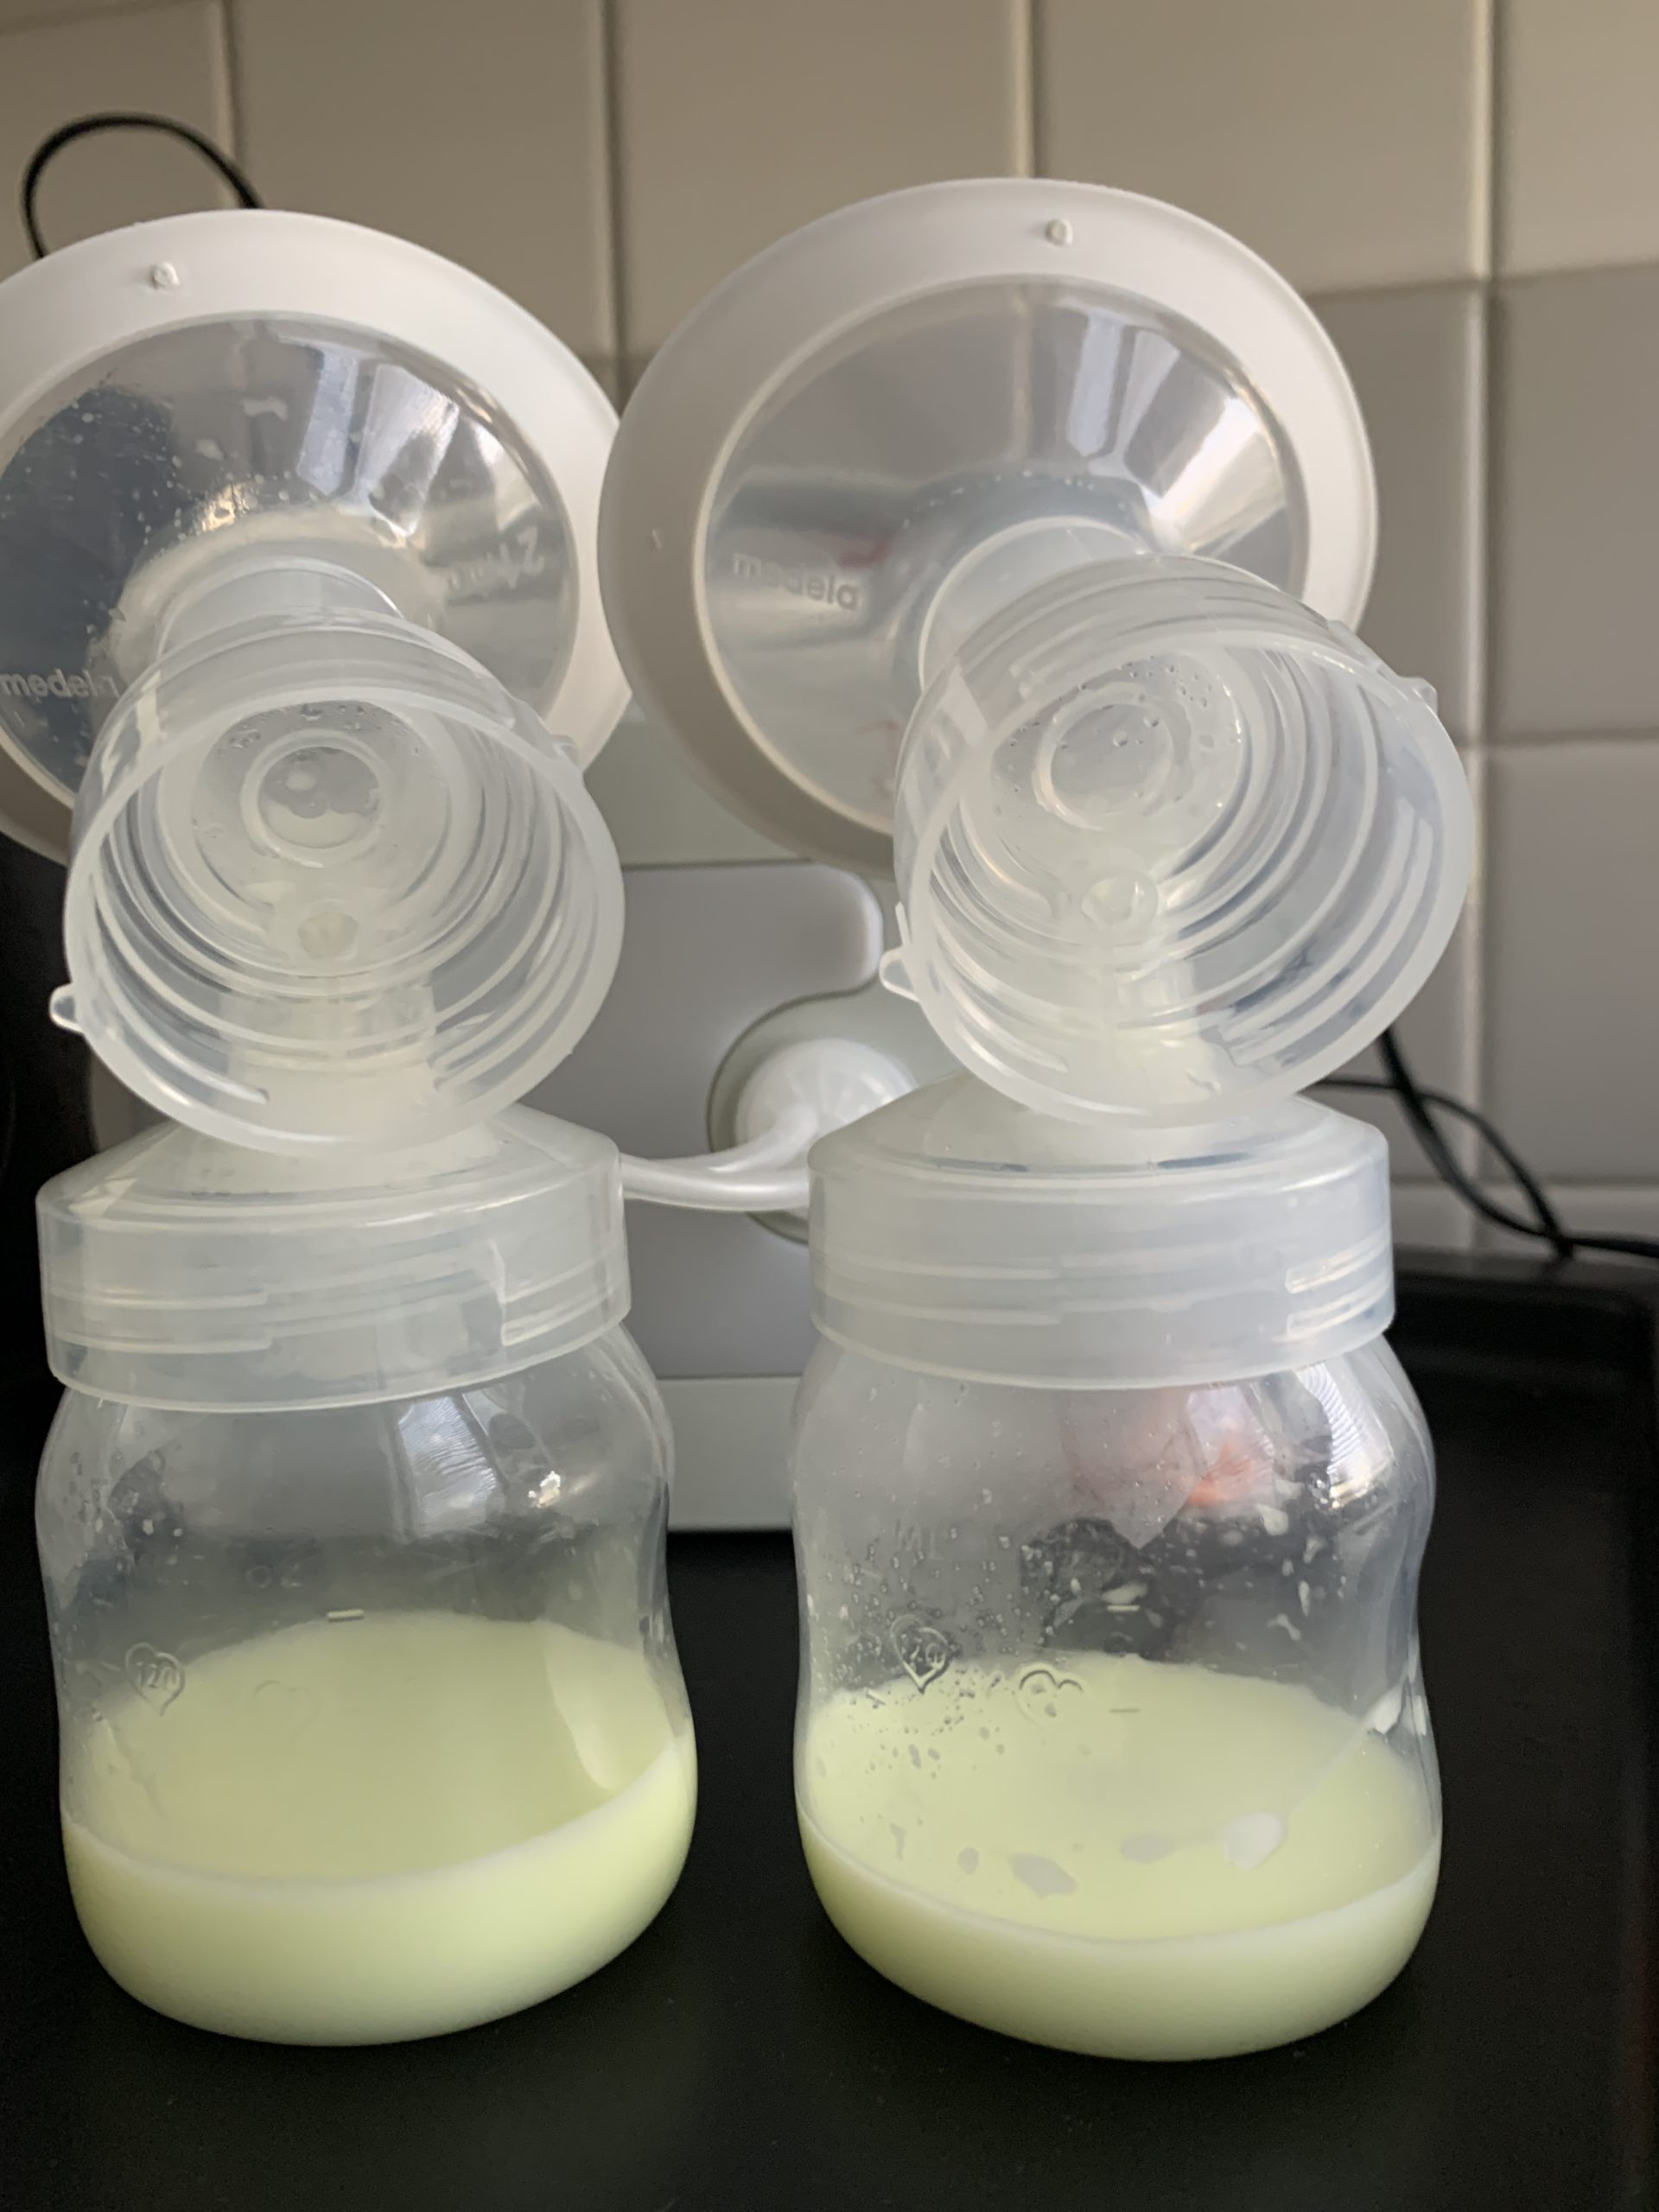 Blame Milking breast milk